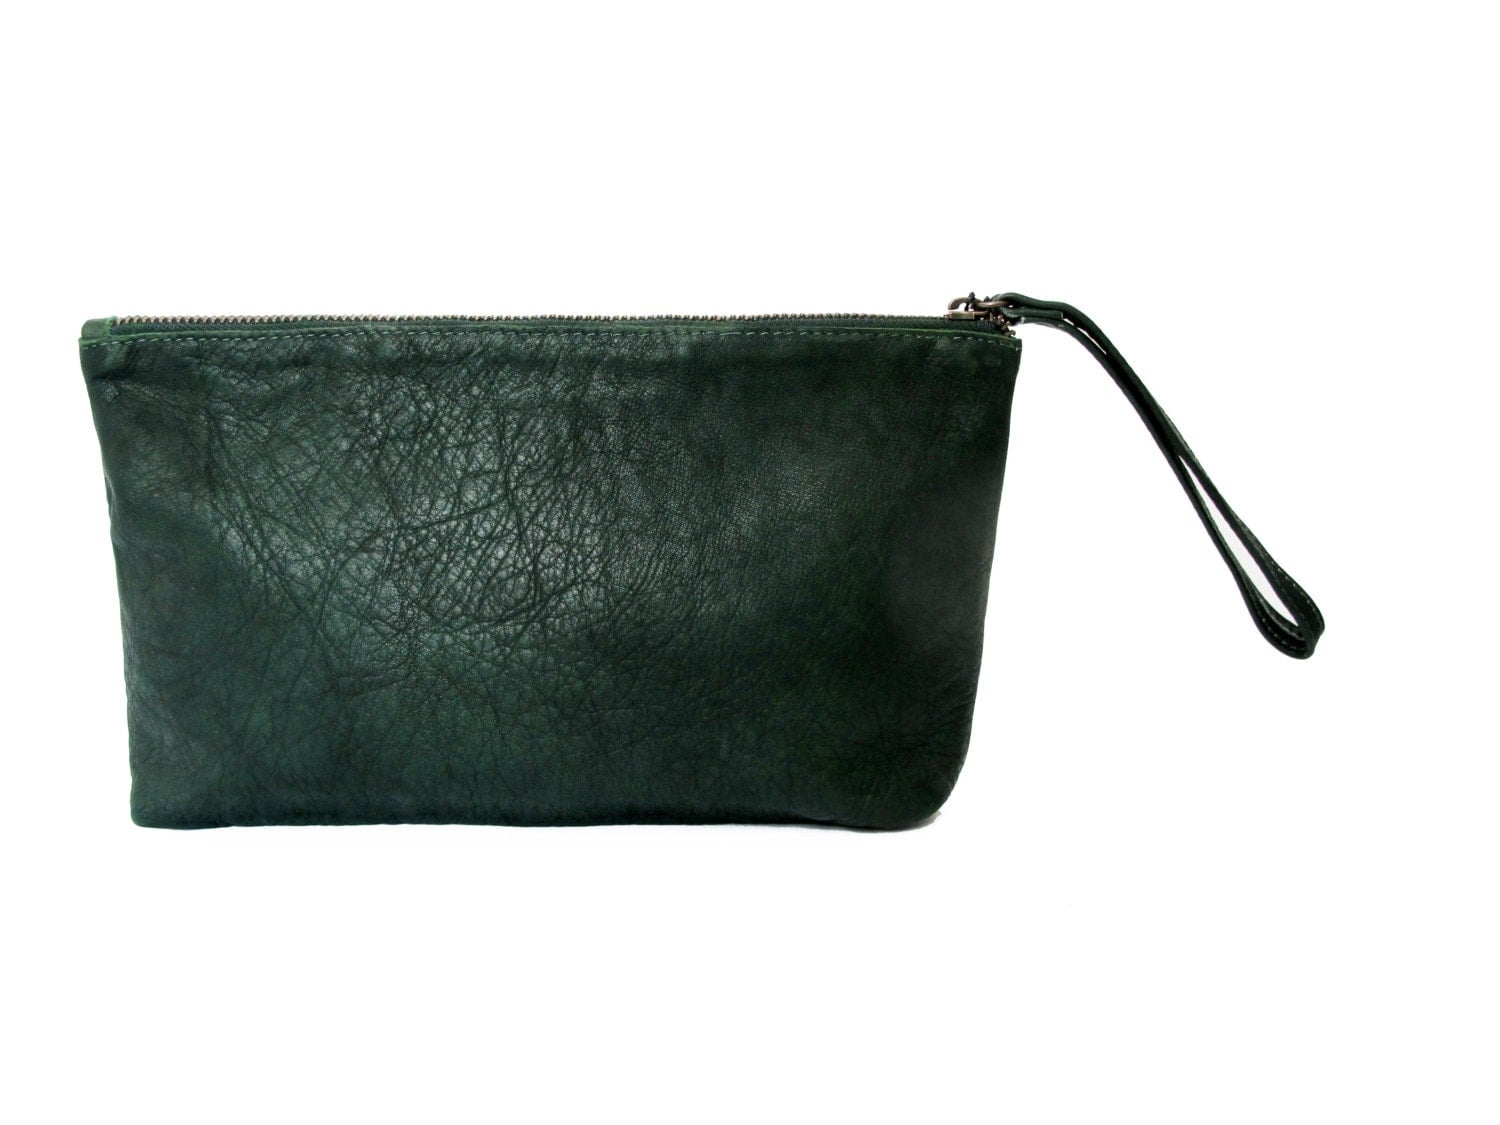 Soft leather clutch purse SALE wristlet cash envelope wallet